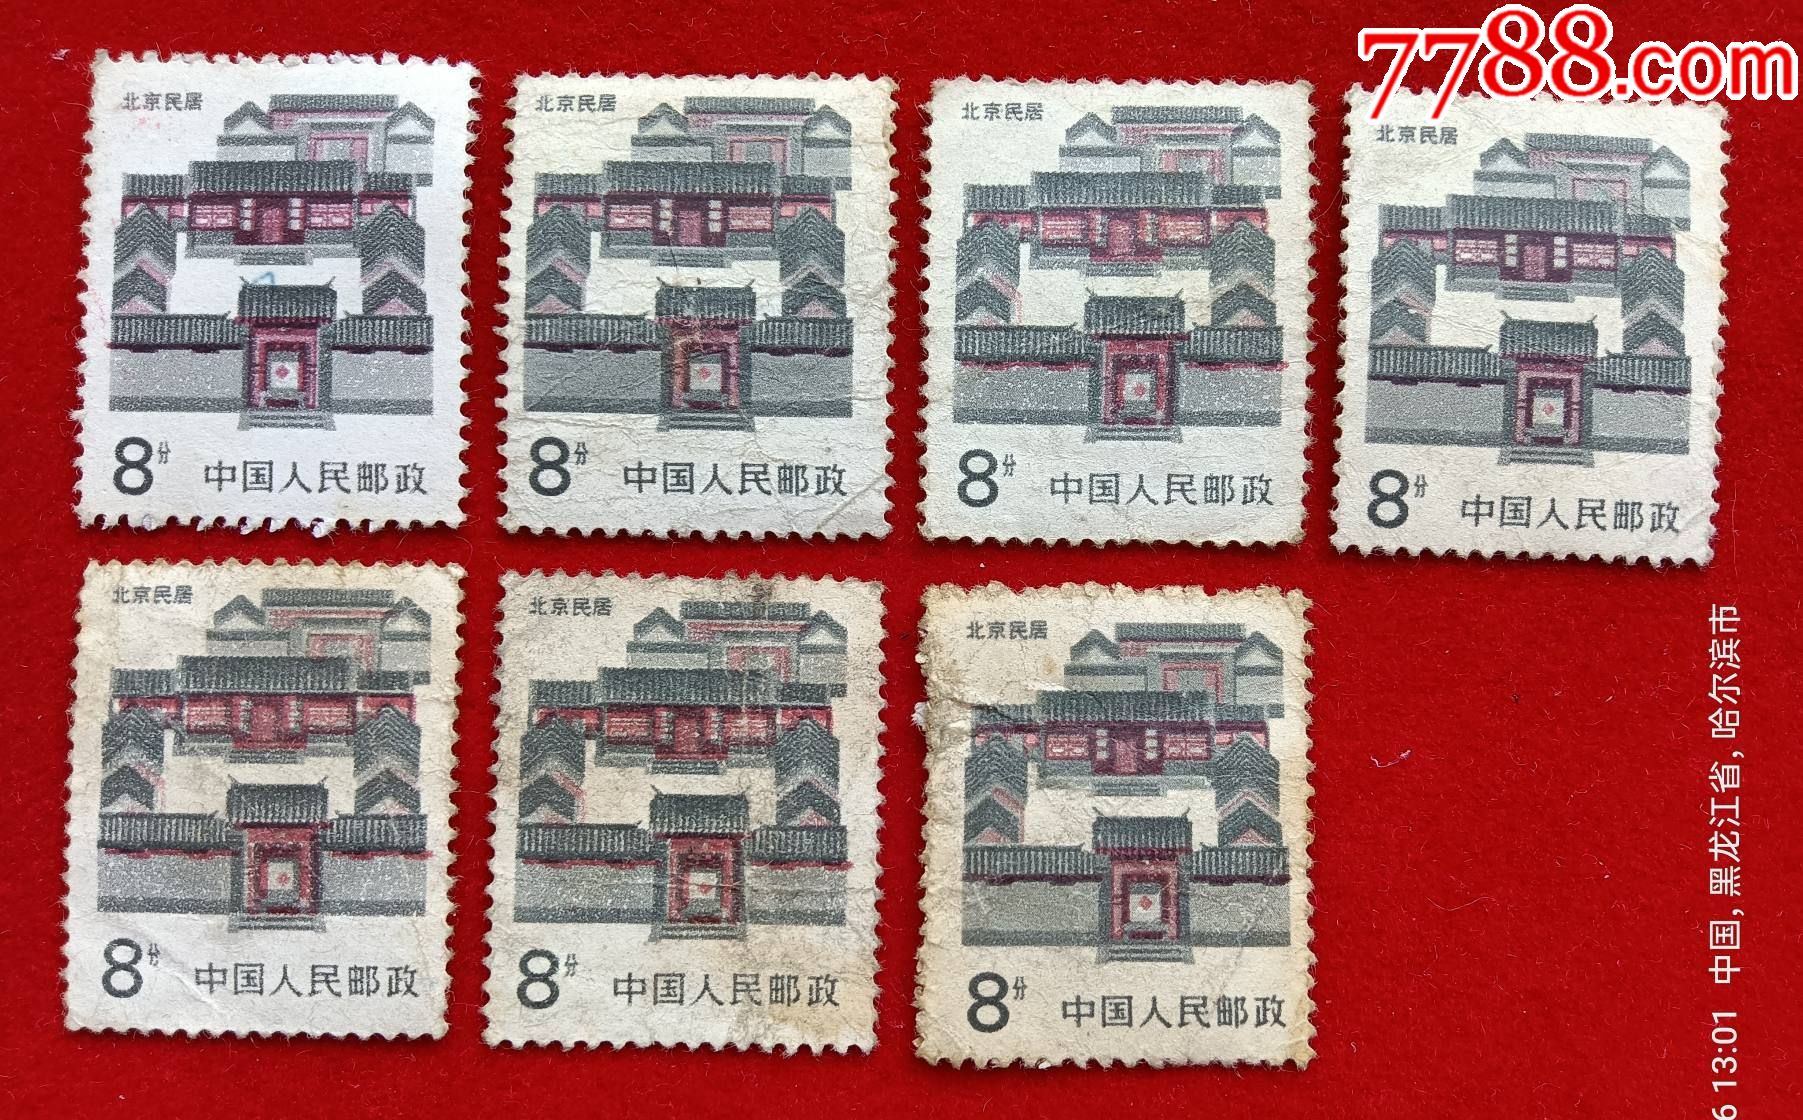 普通邮票:北京民居,8分,7枚.